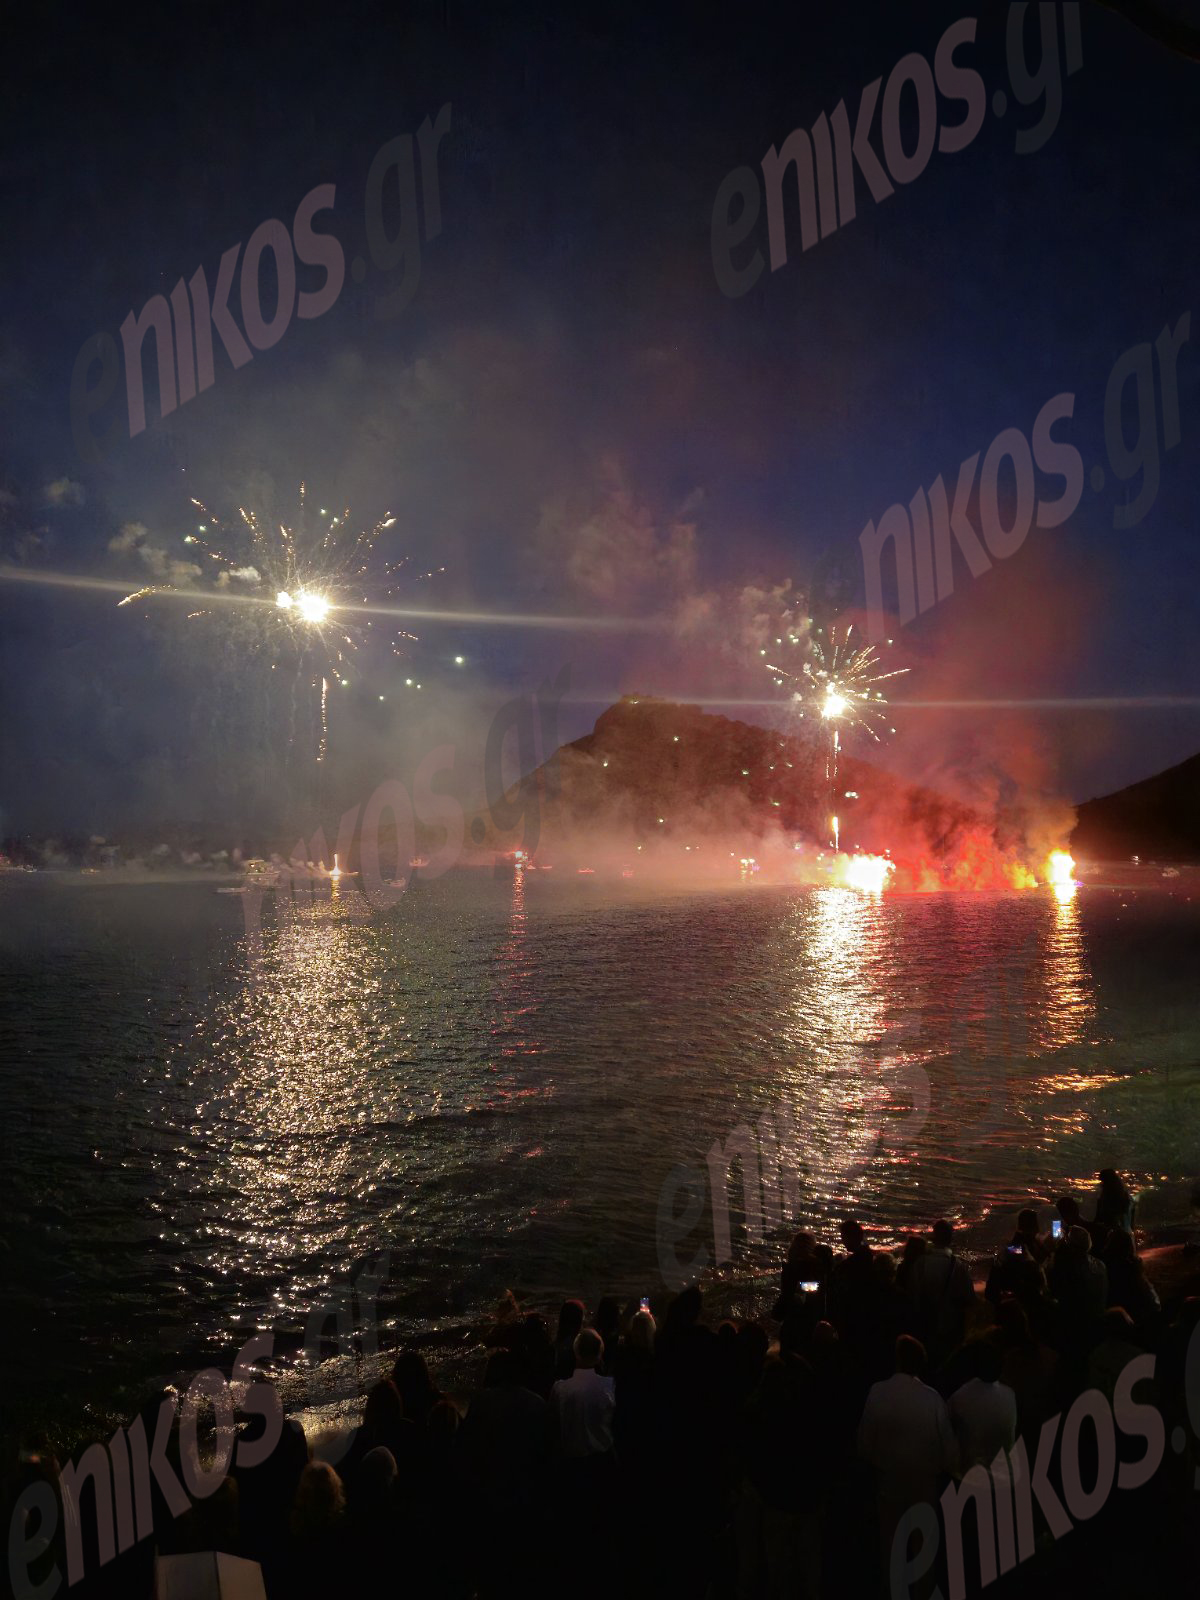 τολό αργολίδας: μαγευτικές εικόνες από το κάψιμο του ιούδα στη θάλασσα – φωτο αναγνώστη